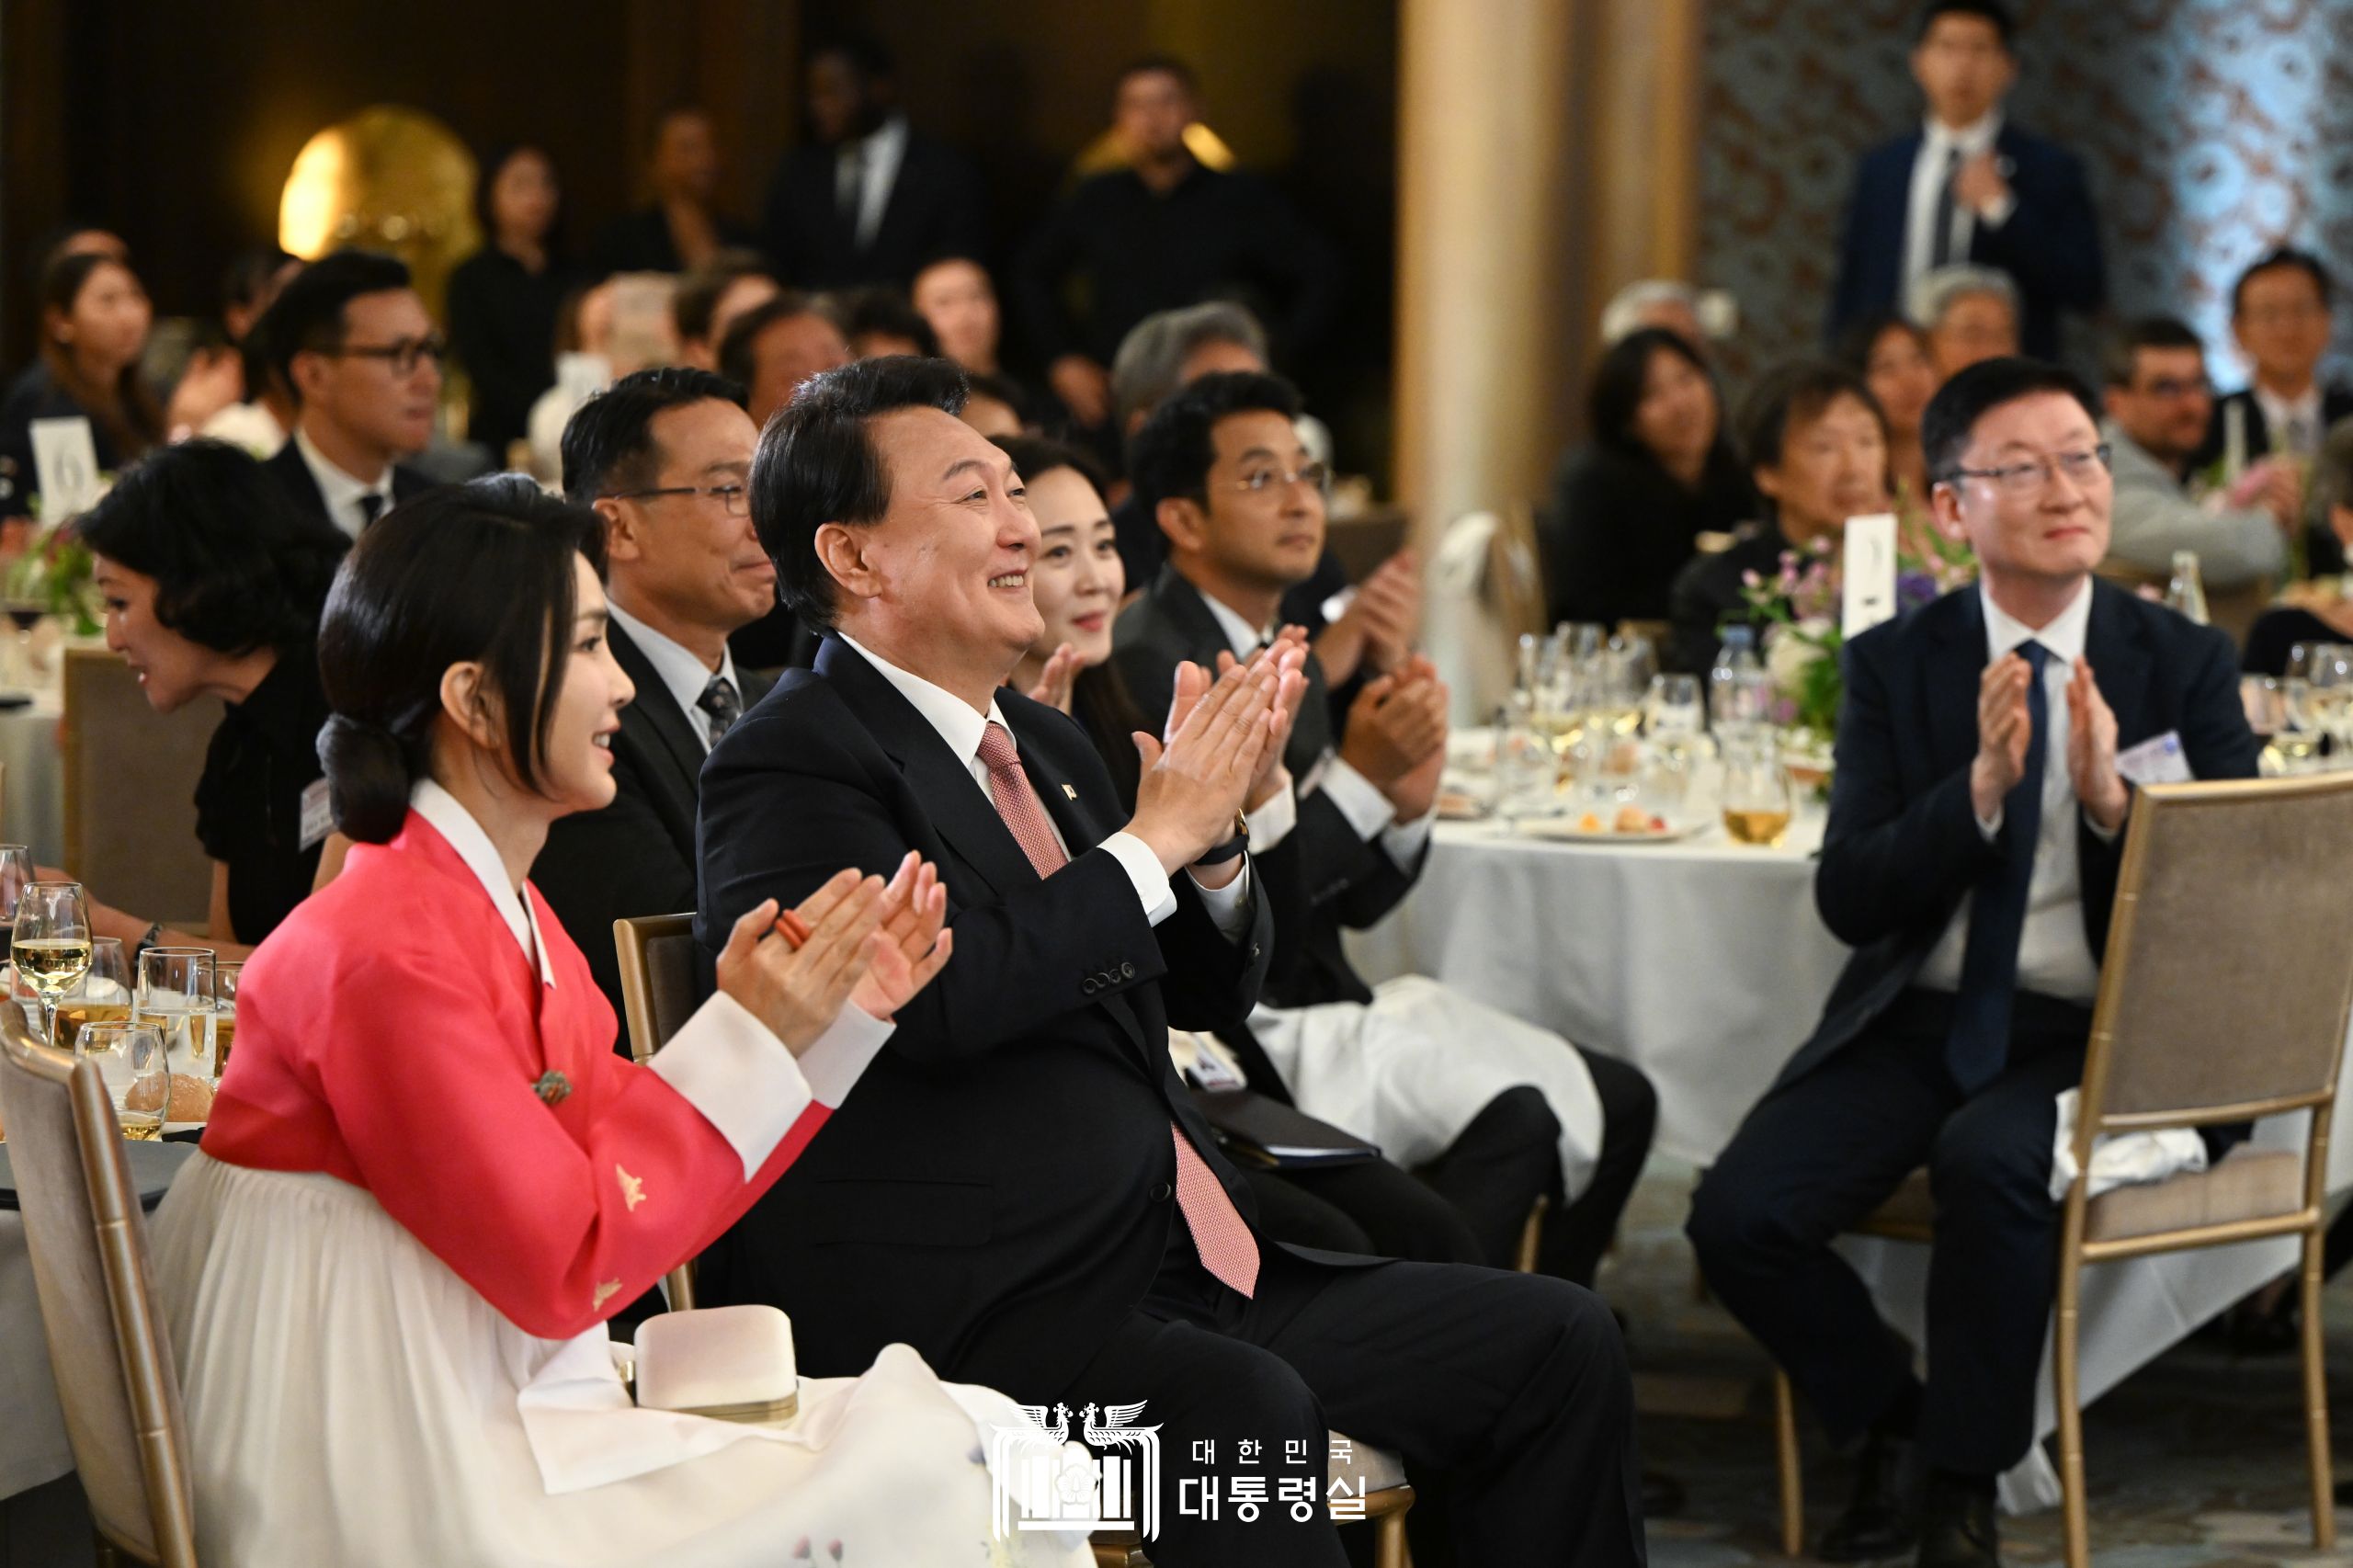 Президент РК Юн Сок Ёль и первая леди Ким Гон Хи 19 июня (по местному времени) аплодируют, наблюдая за выступлением на встрече с представителями корейской диаспоры в одном из отелей Парижа, Франция. / Фото: Канцелярия президента РК